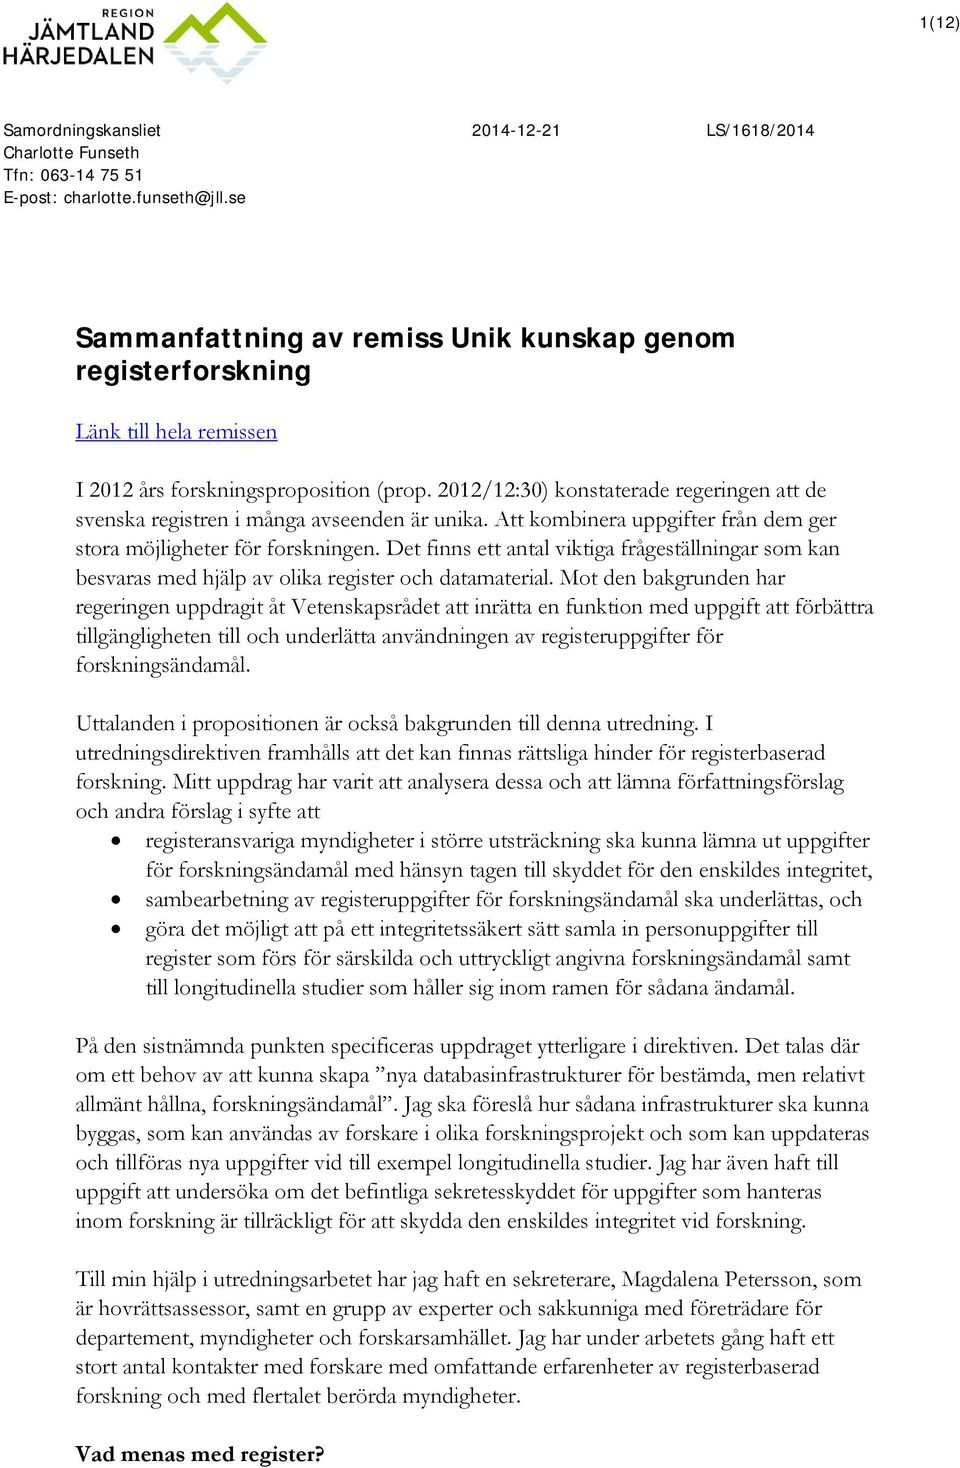 2012/12:30) konstaterade regeringen att de svenska registren i många avseenden är unika. Att kombinera uppgifter från dem ger stora möjligheter för forskningen.